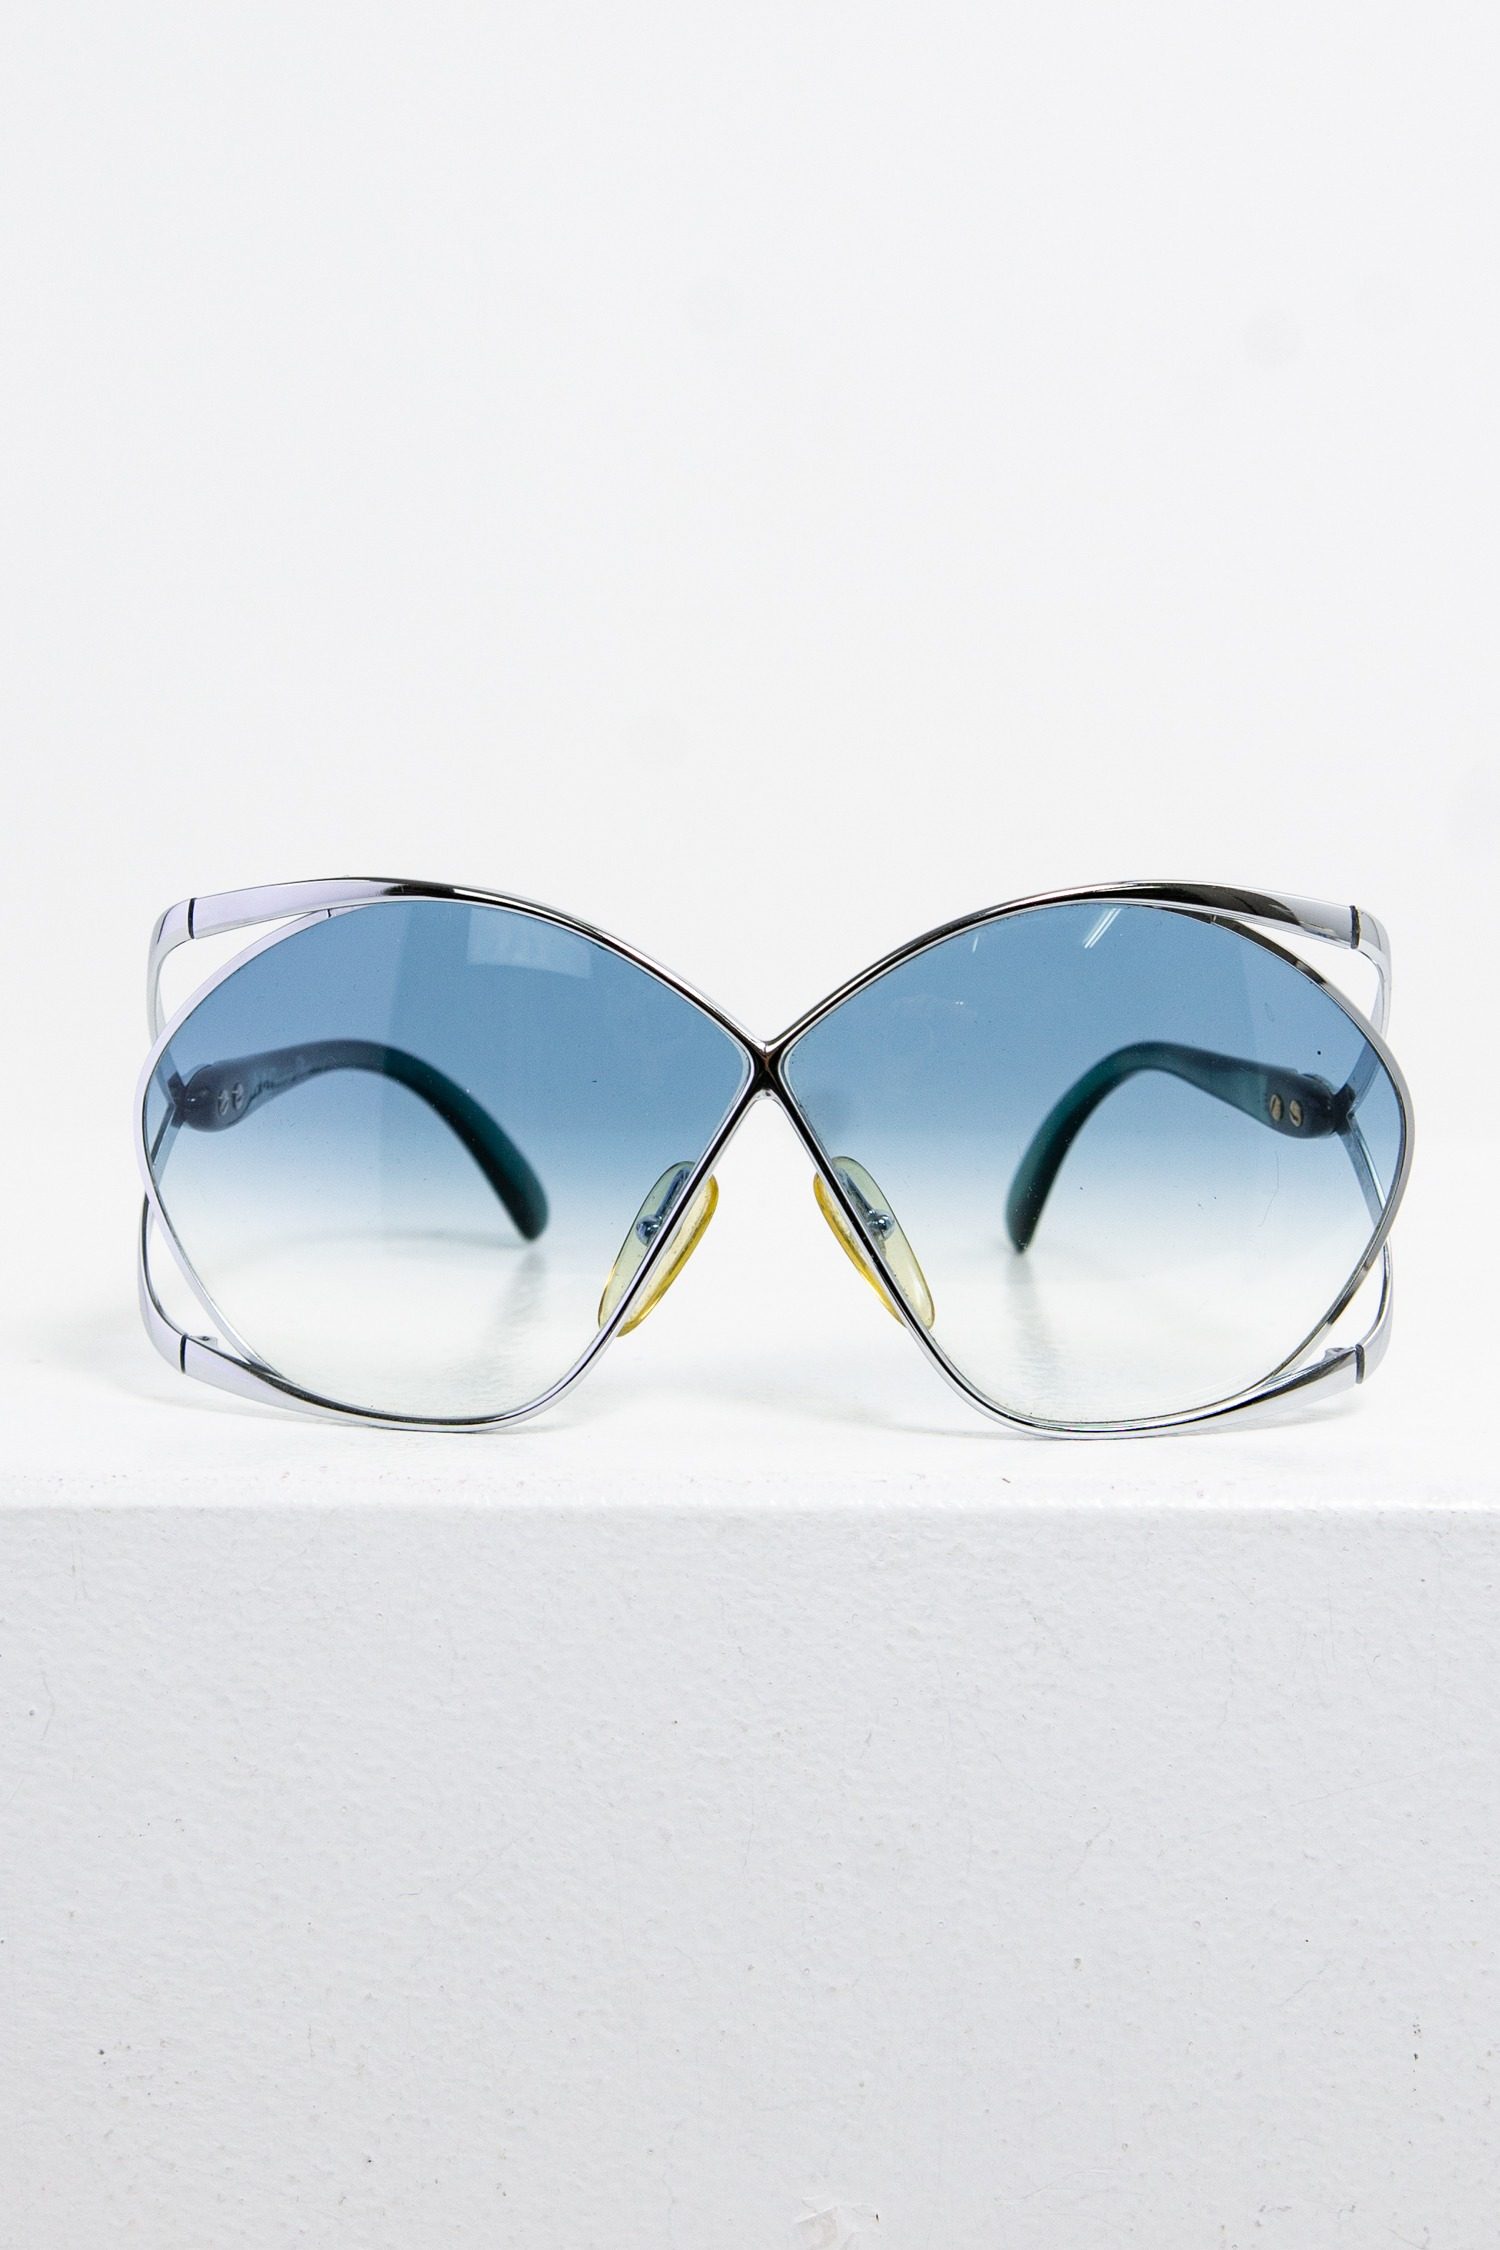 Christian Dior Sonnenbrille mit hellblauen Brillengläsern